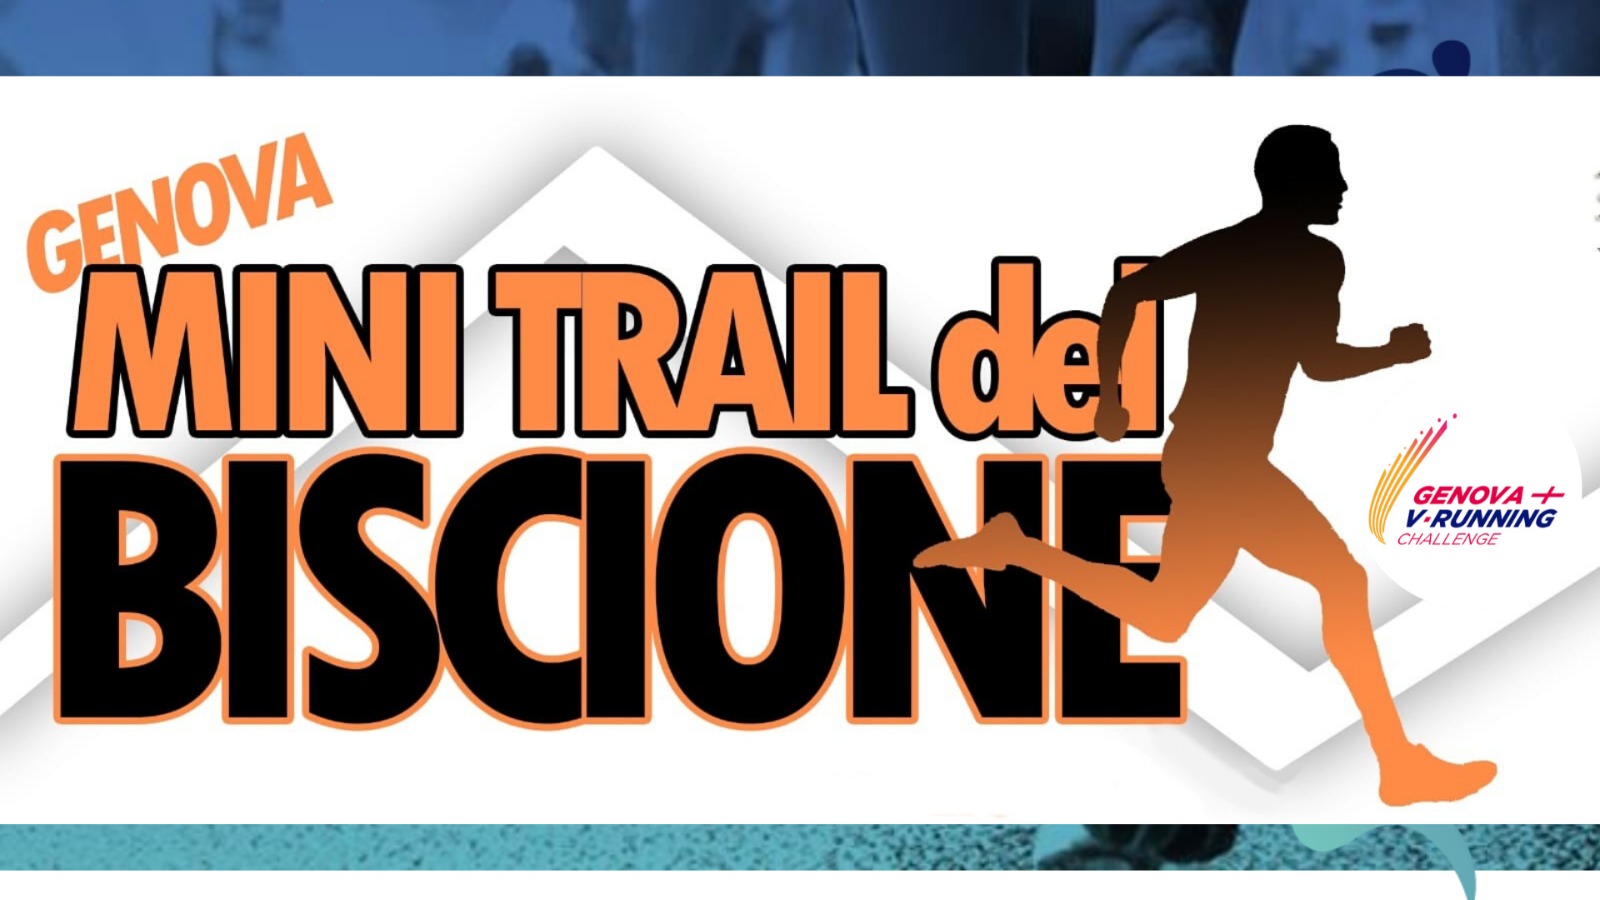 Volantino MINI TRAIL DEL BISCIONE VIRTUAL EDITION - GENOVA V-RUNNING CHALLENGE